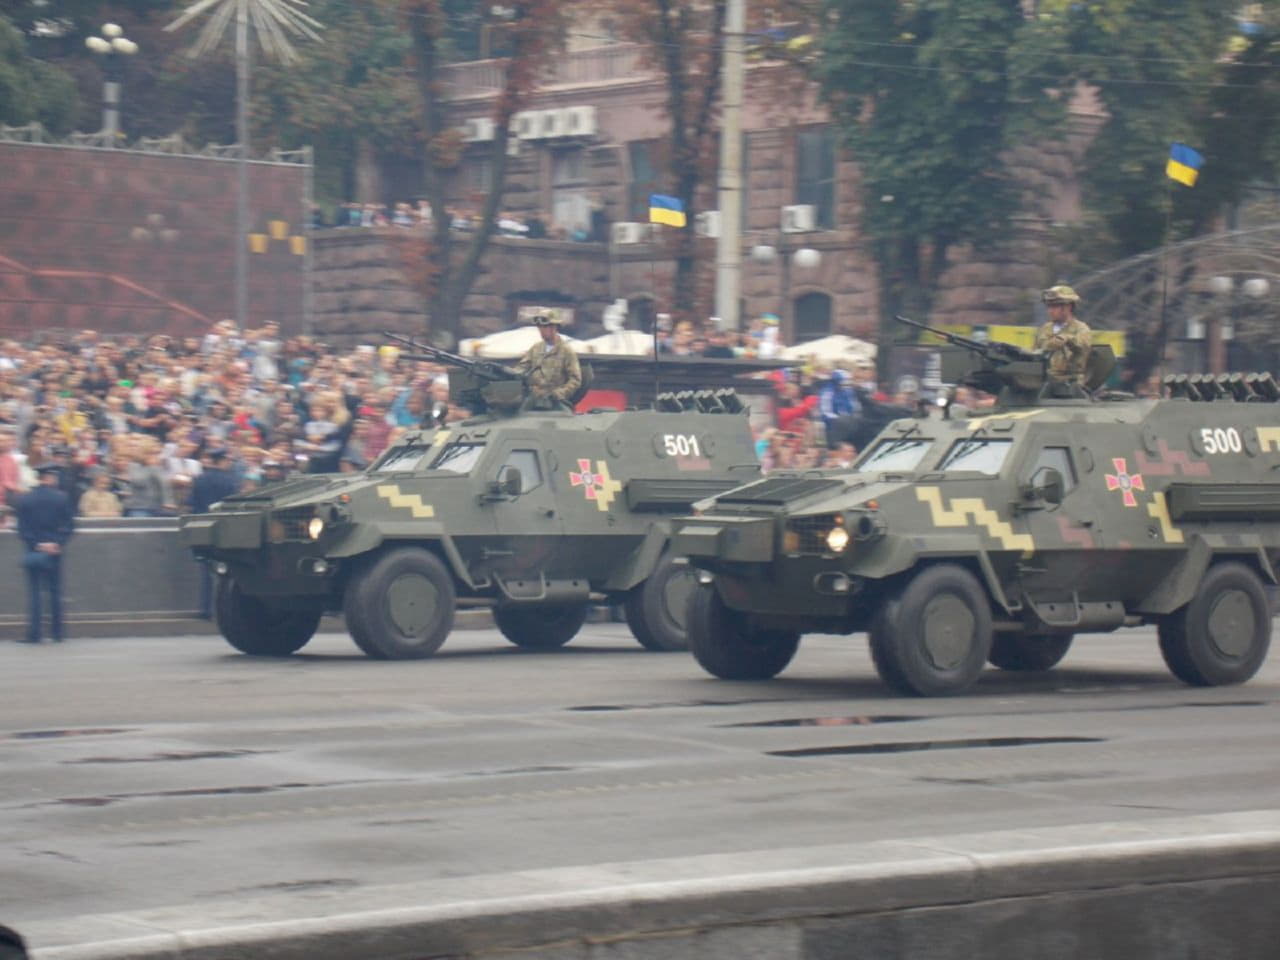 украинские военные